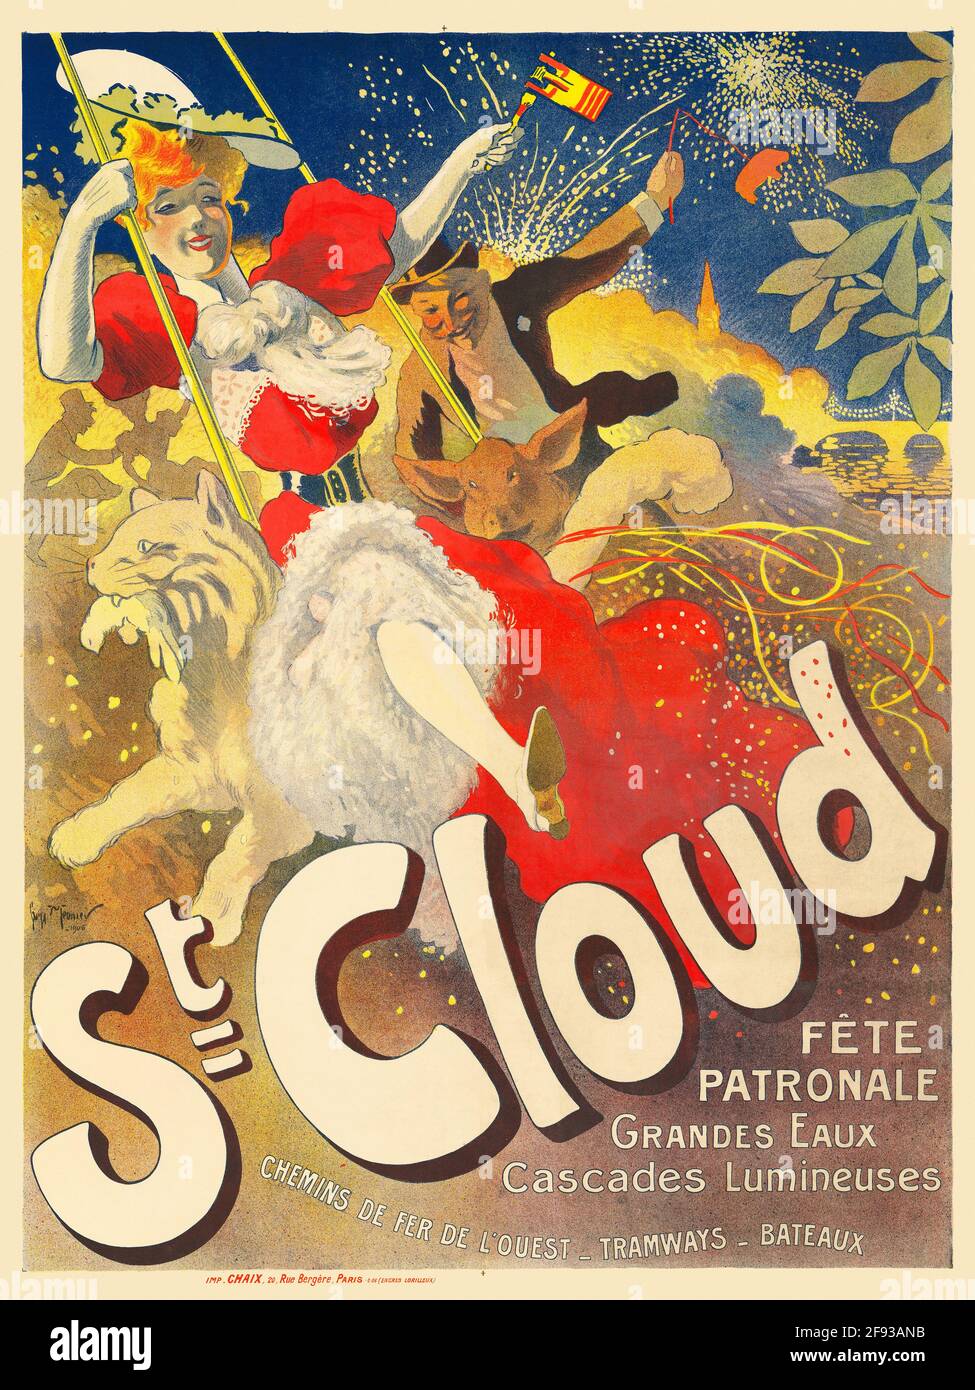 St. Cloud. Fête patronale, grandes eaux, Cascades lumineuses von Gaston La Touche (Französisch, 1854-1913). Restauriertes Vintage-Werbeplakat, das ursprünglich 1895 in Frankreich veröffentlicht wurde. Stockfoto